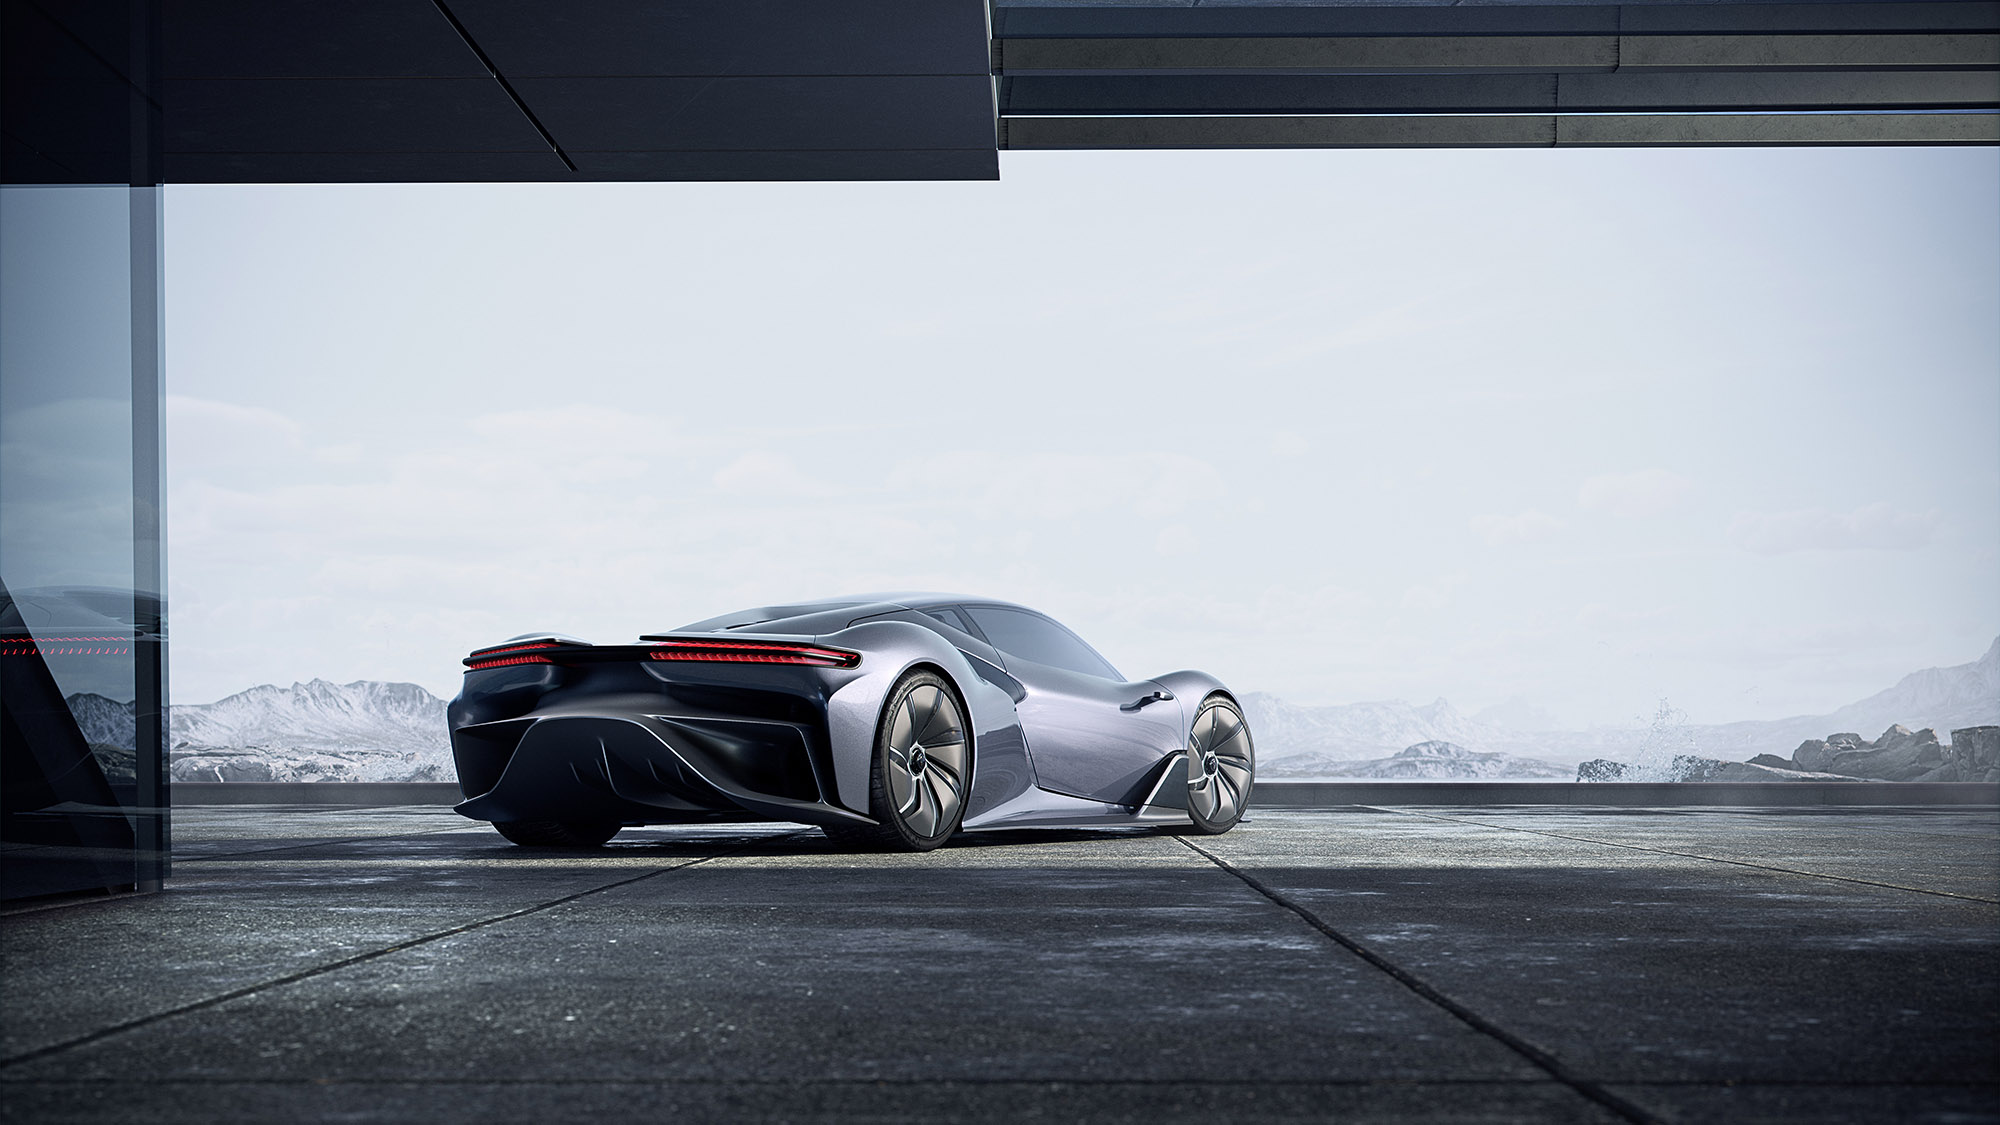 MH2 – Matador Hydrogen Concept Car – Winter